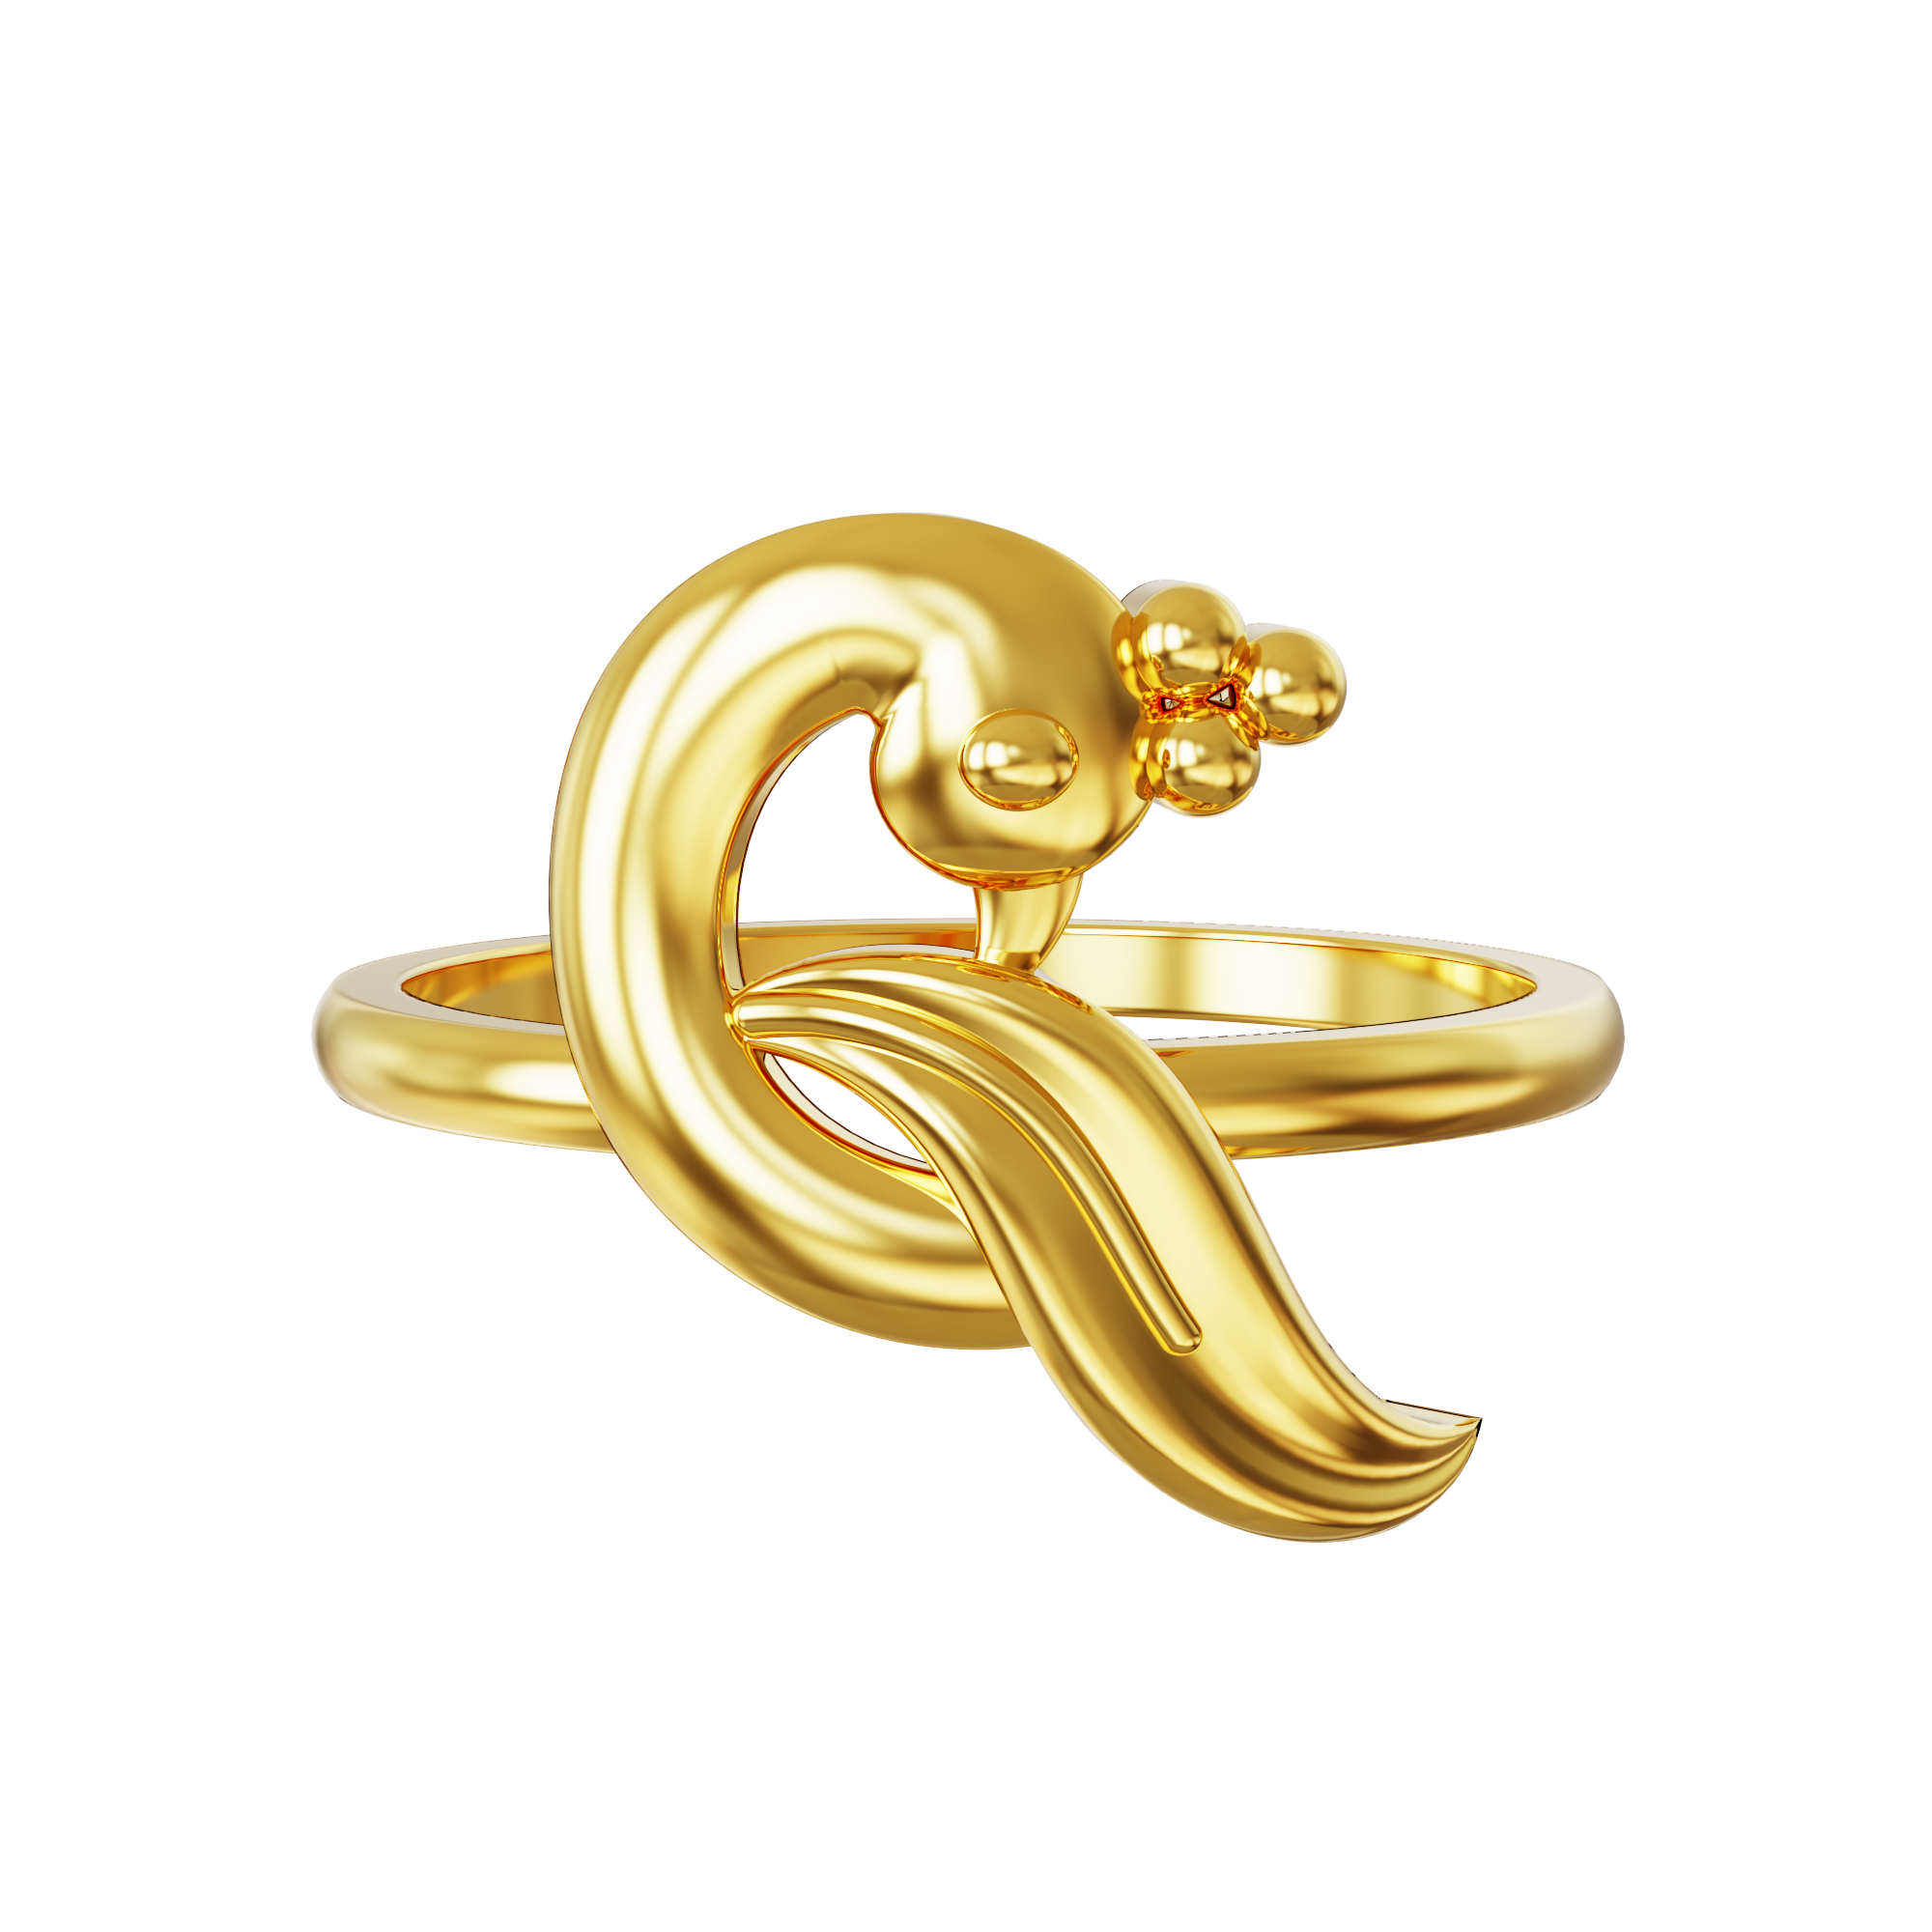 Best Gold ring design for female in 2019 - YouTube | Ring design for  female, Gold ring designs, Ring designs